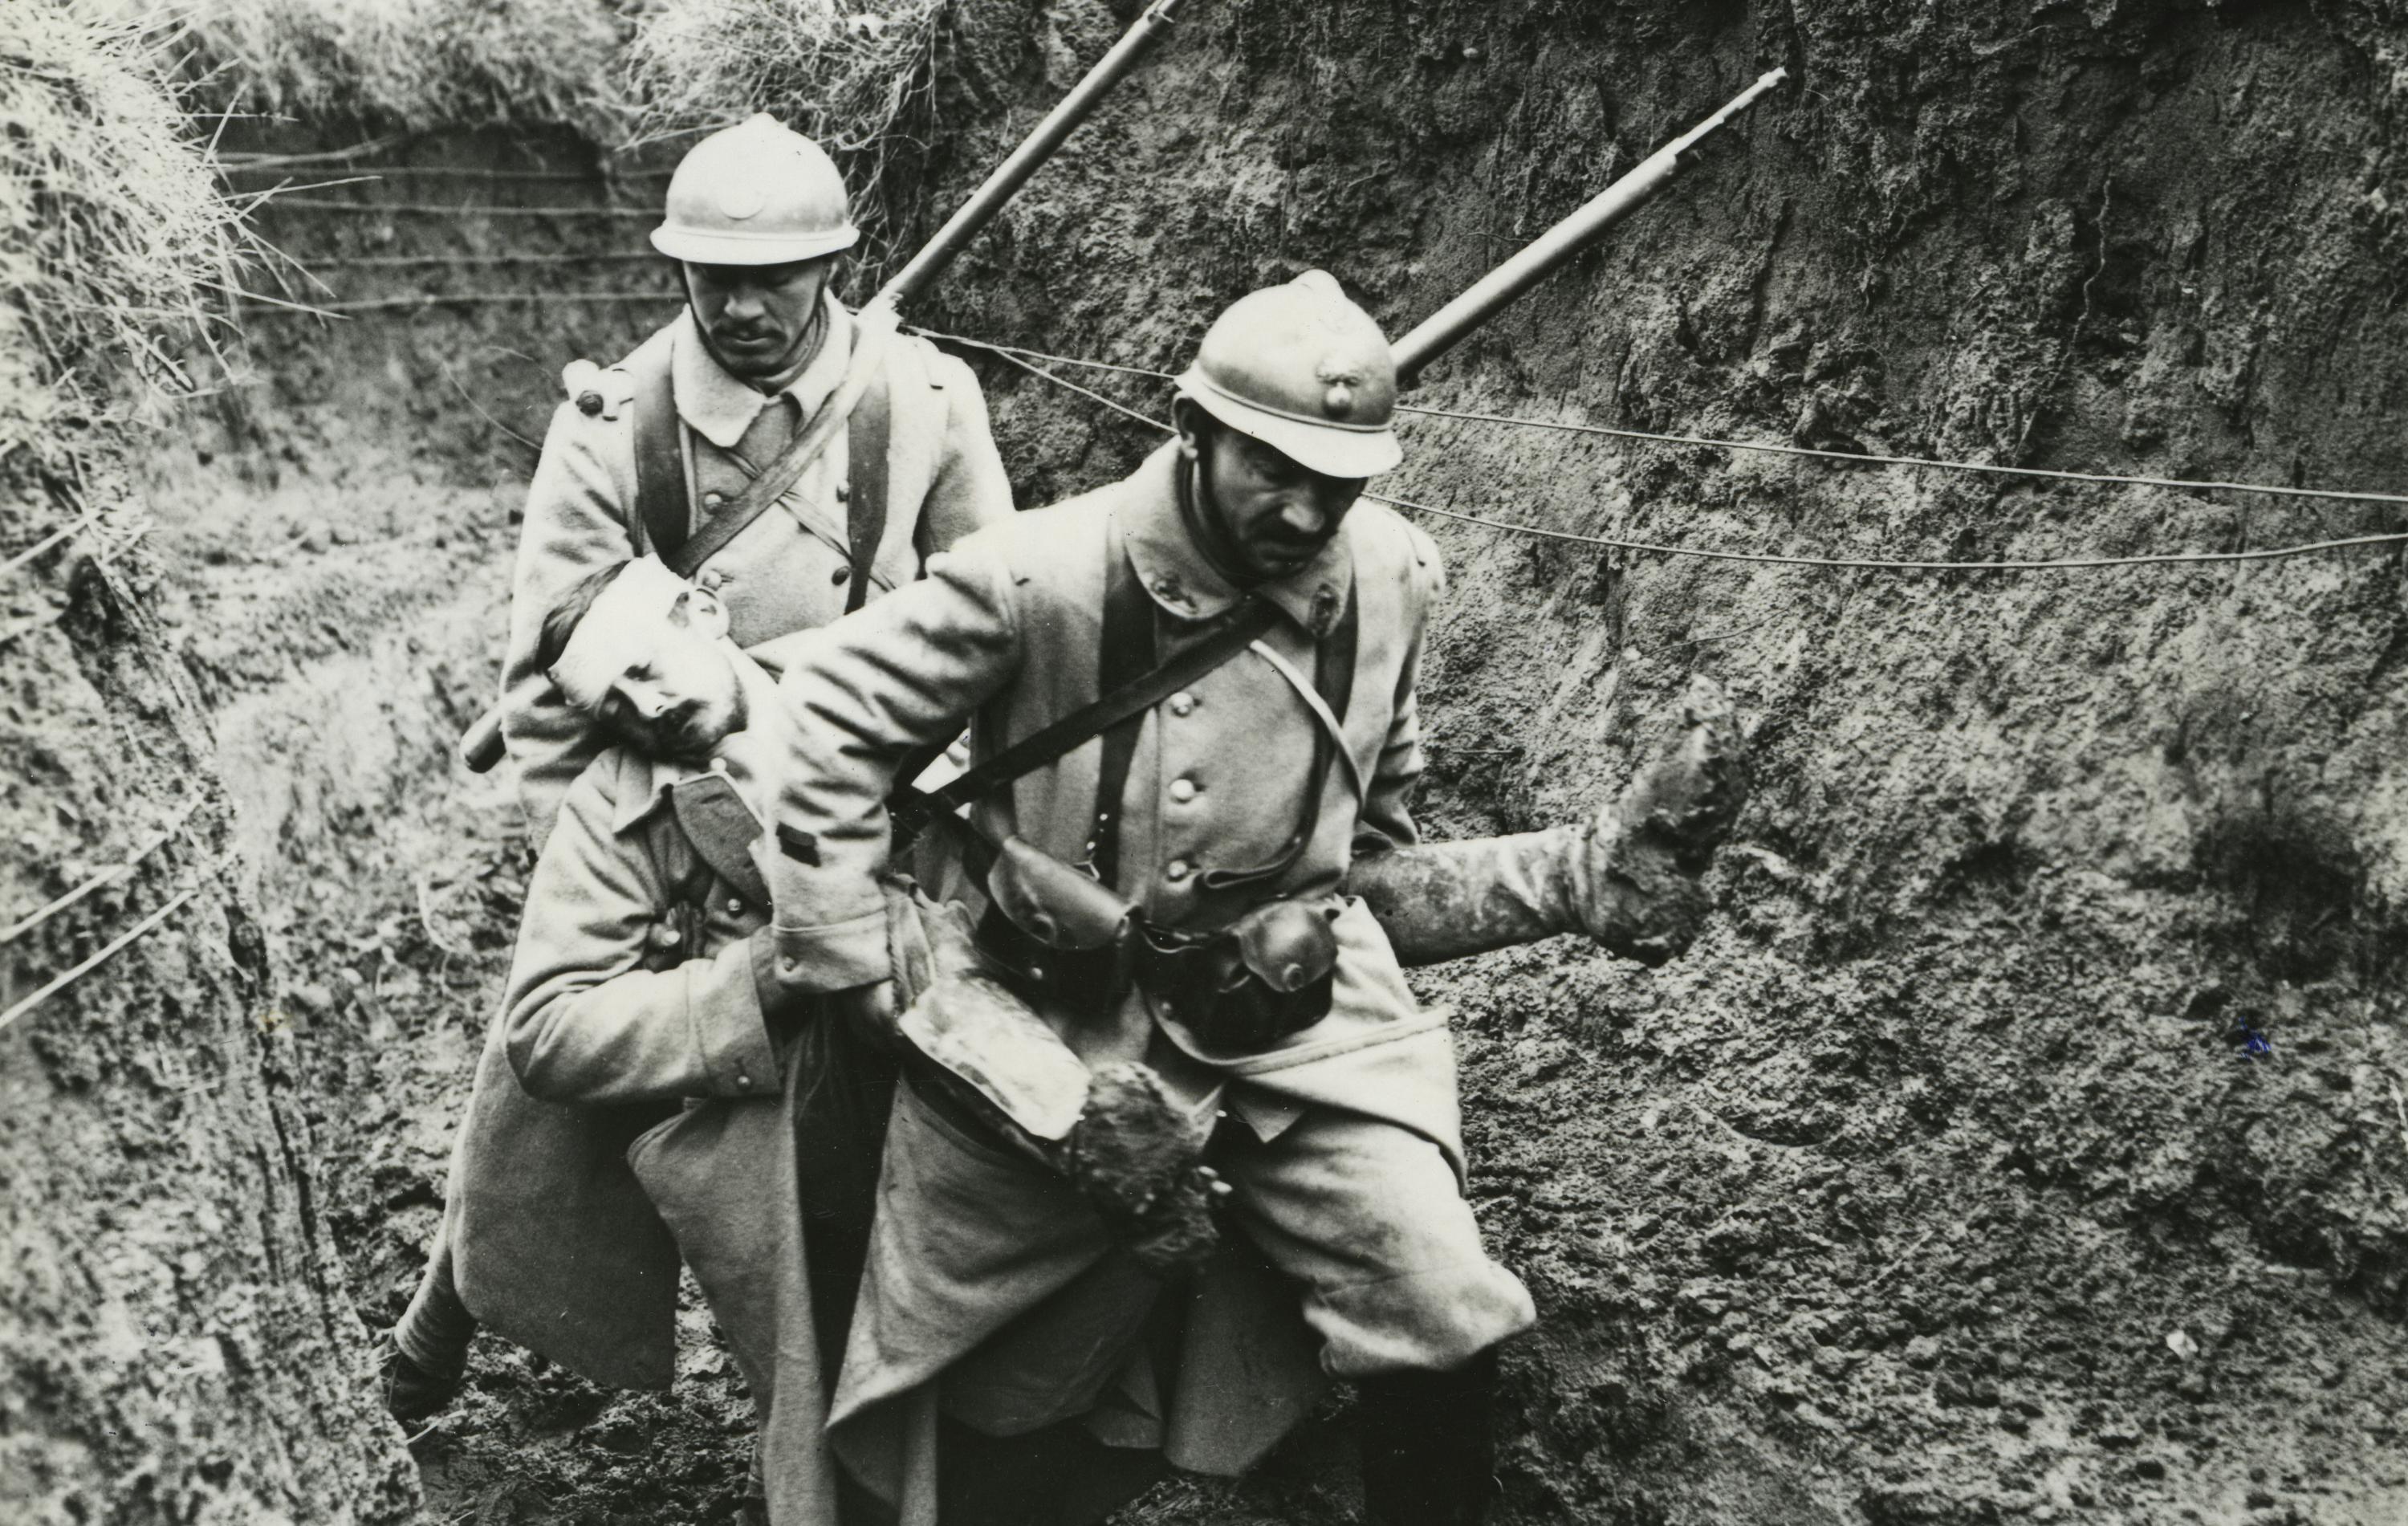 Die sanitätsdienstliche Unterstützung im Ersten Weltkrieg und der Alltag des Frontsoldaten